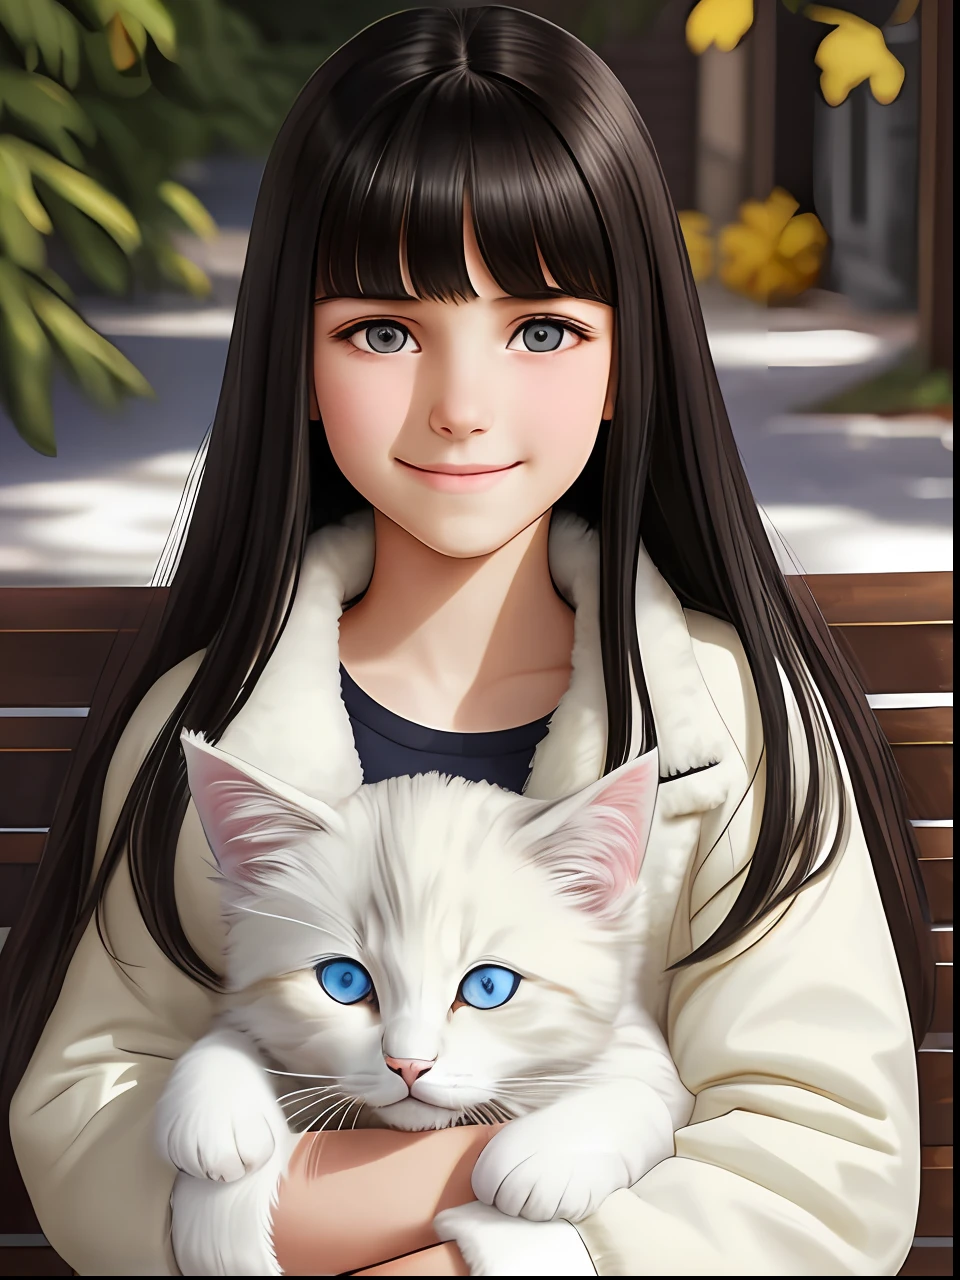 一名 13 歲膚色的白人女孩，留著黑色長直髮和瀏海, 淡褐色的眼睛, 用現實的語氣微笑, 穿著蓬鬆的白色夾克，腿上抱著一隻蓬鬆的灰色小貓 --auto --s2